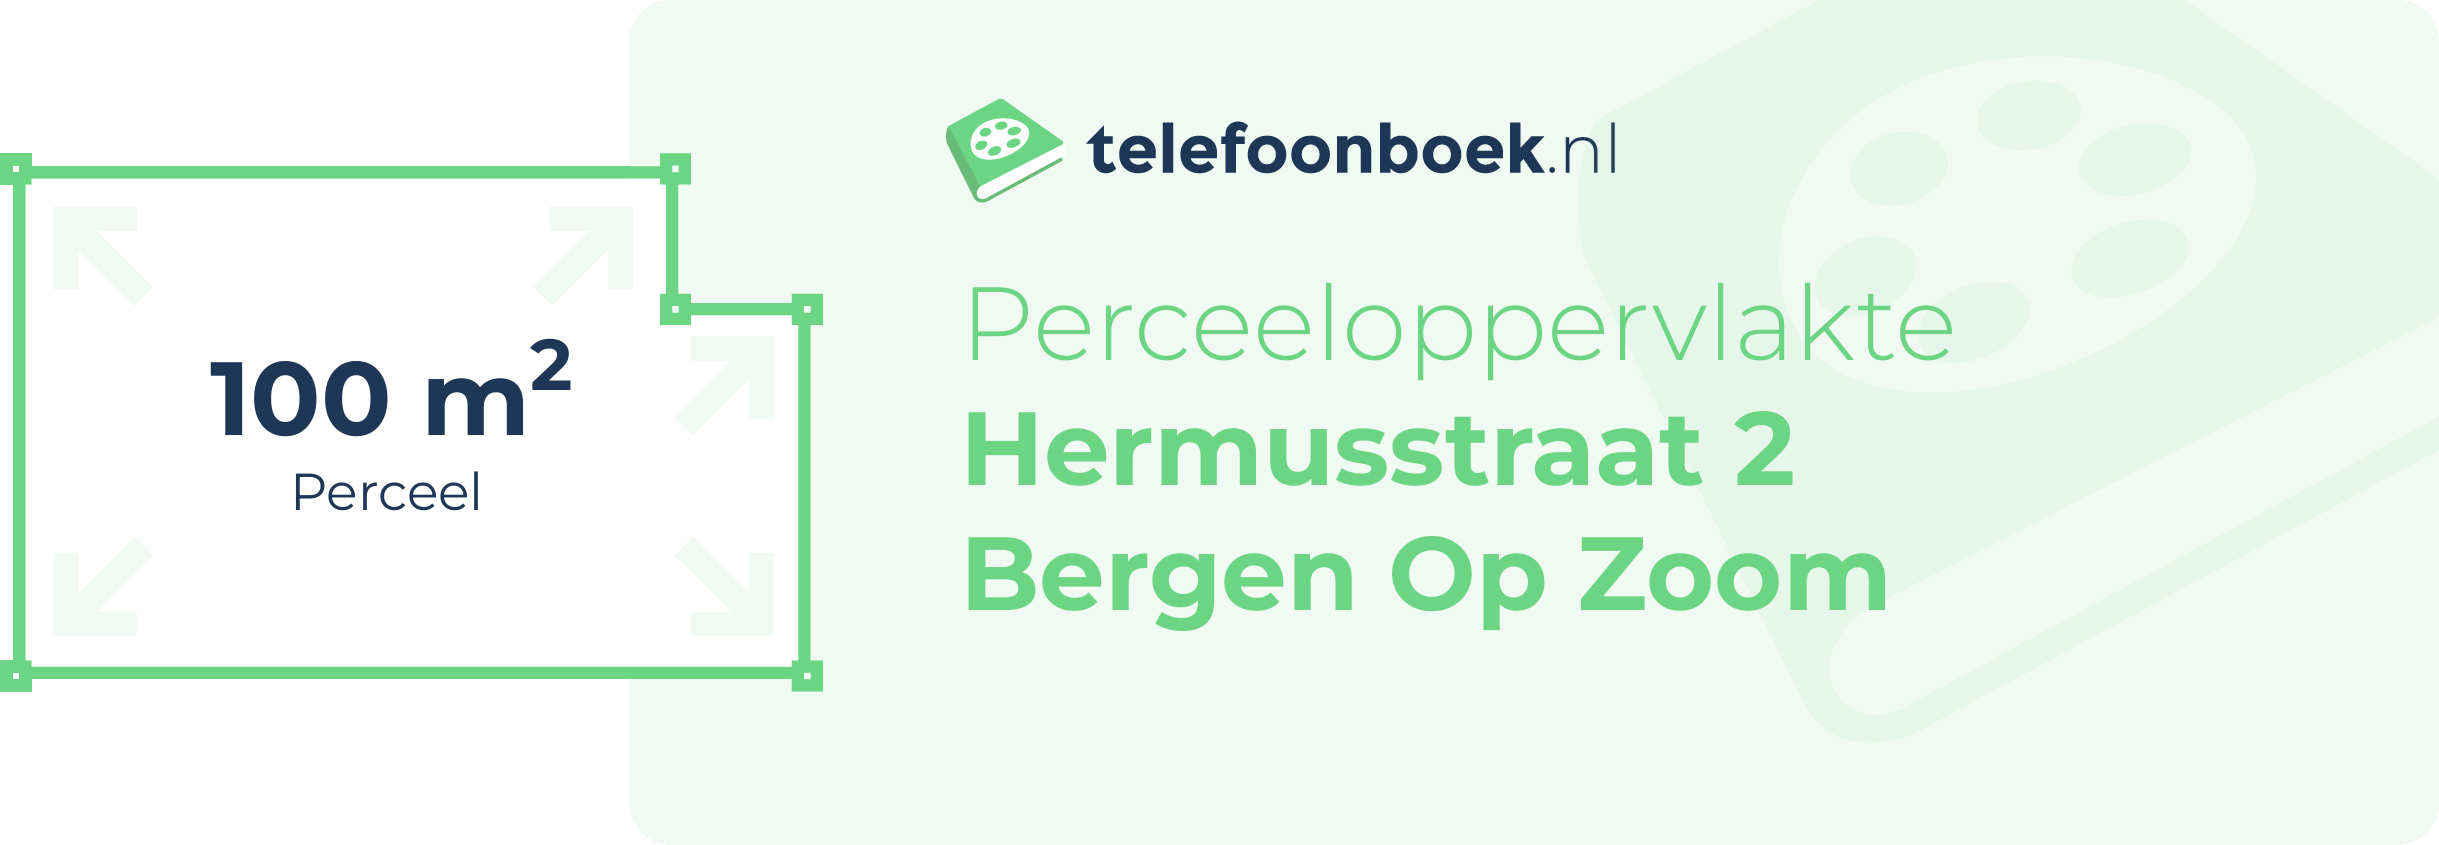 Perceeloppervlakte Hermusstraat 2 Bergen Op Zoom